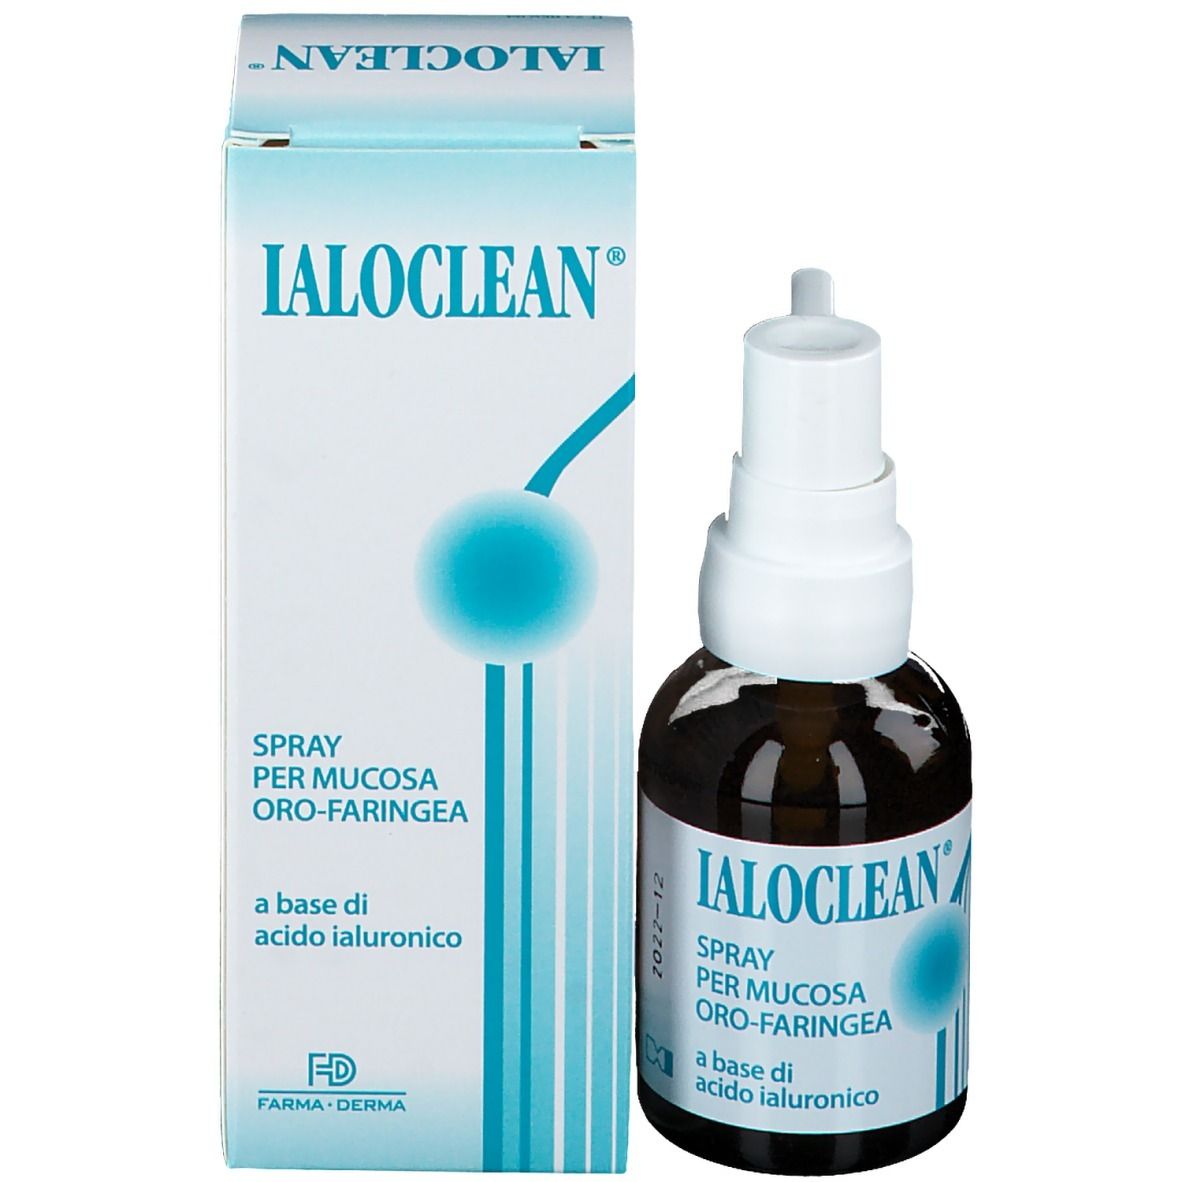 Ialoclean® Spray